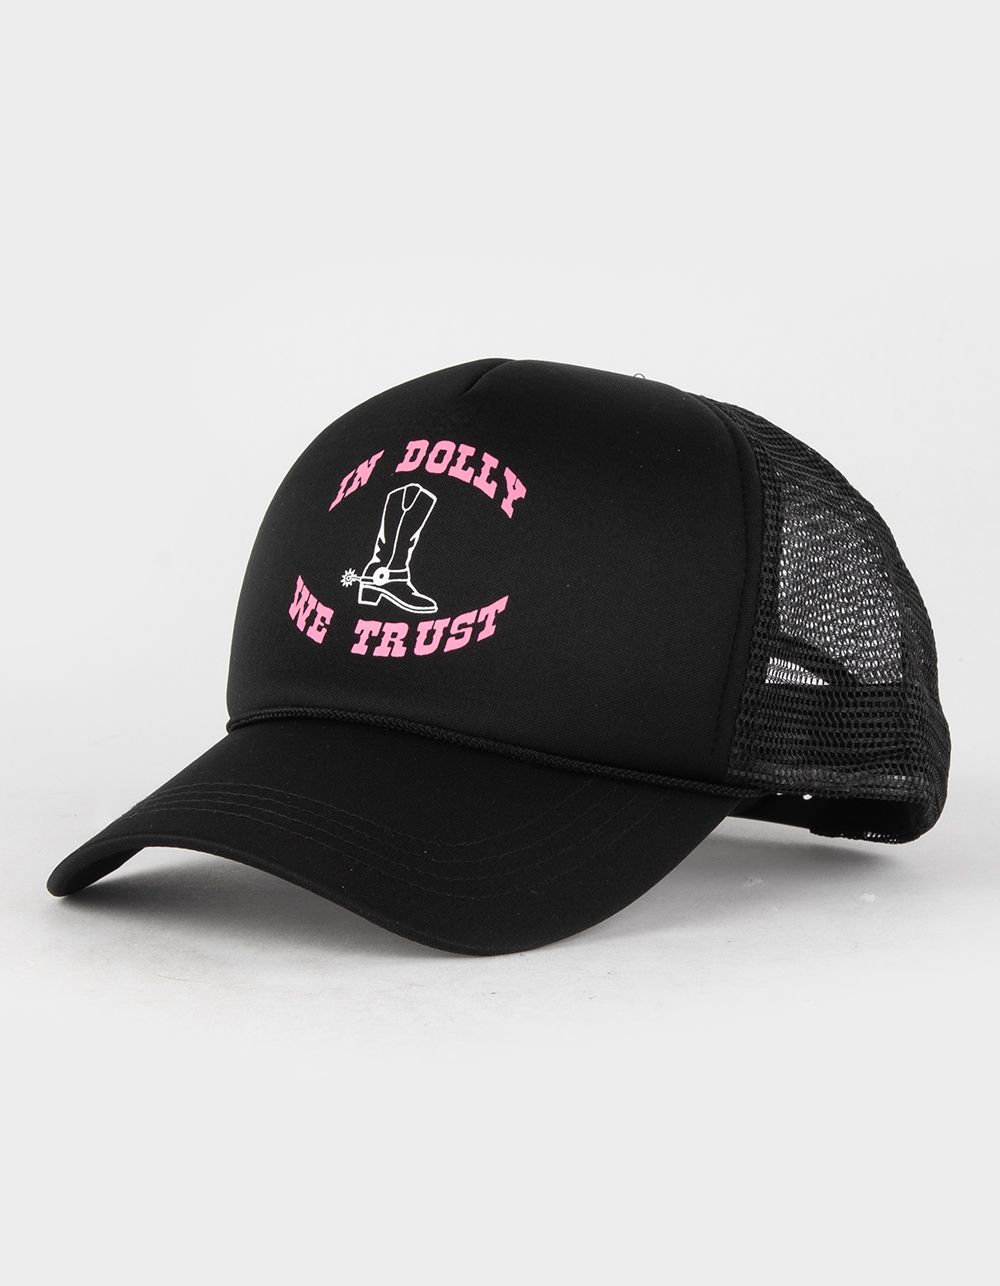 In Dolly We Trust Womens Trucker Hat | Tillys